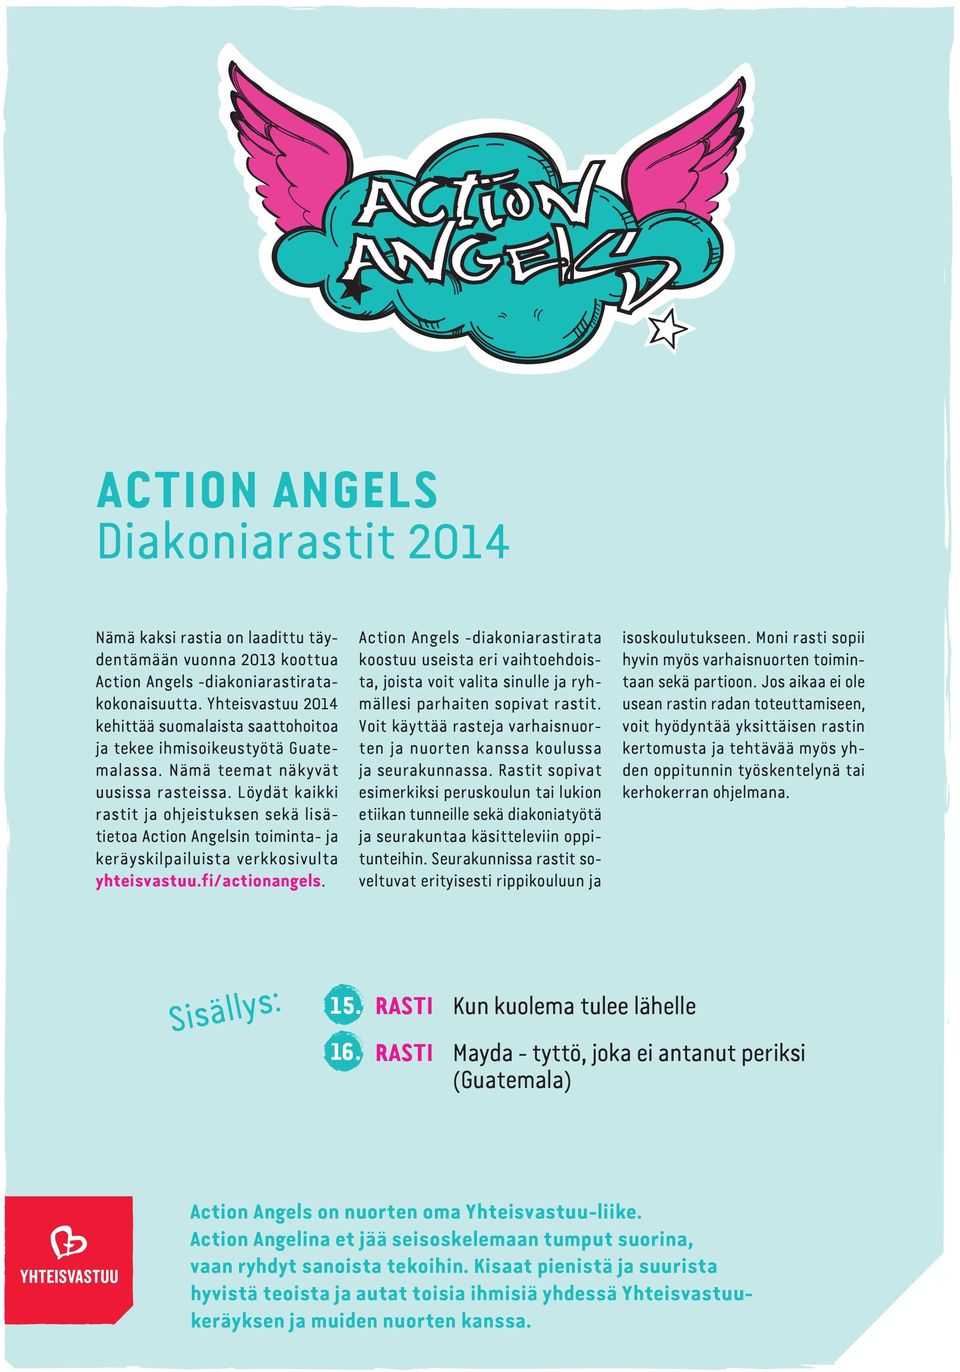 Löydät kaikki rastit ja ohjeistuksen sekä lisätietoa Action Angelsin toiminta- ja keräyskilpailuista verkkosivulta yhteisvastuu.fi/actionangels.